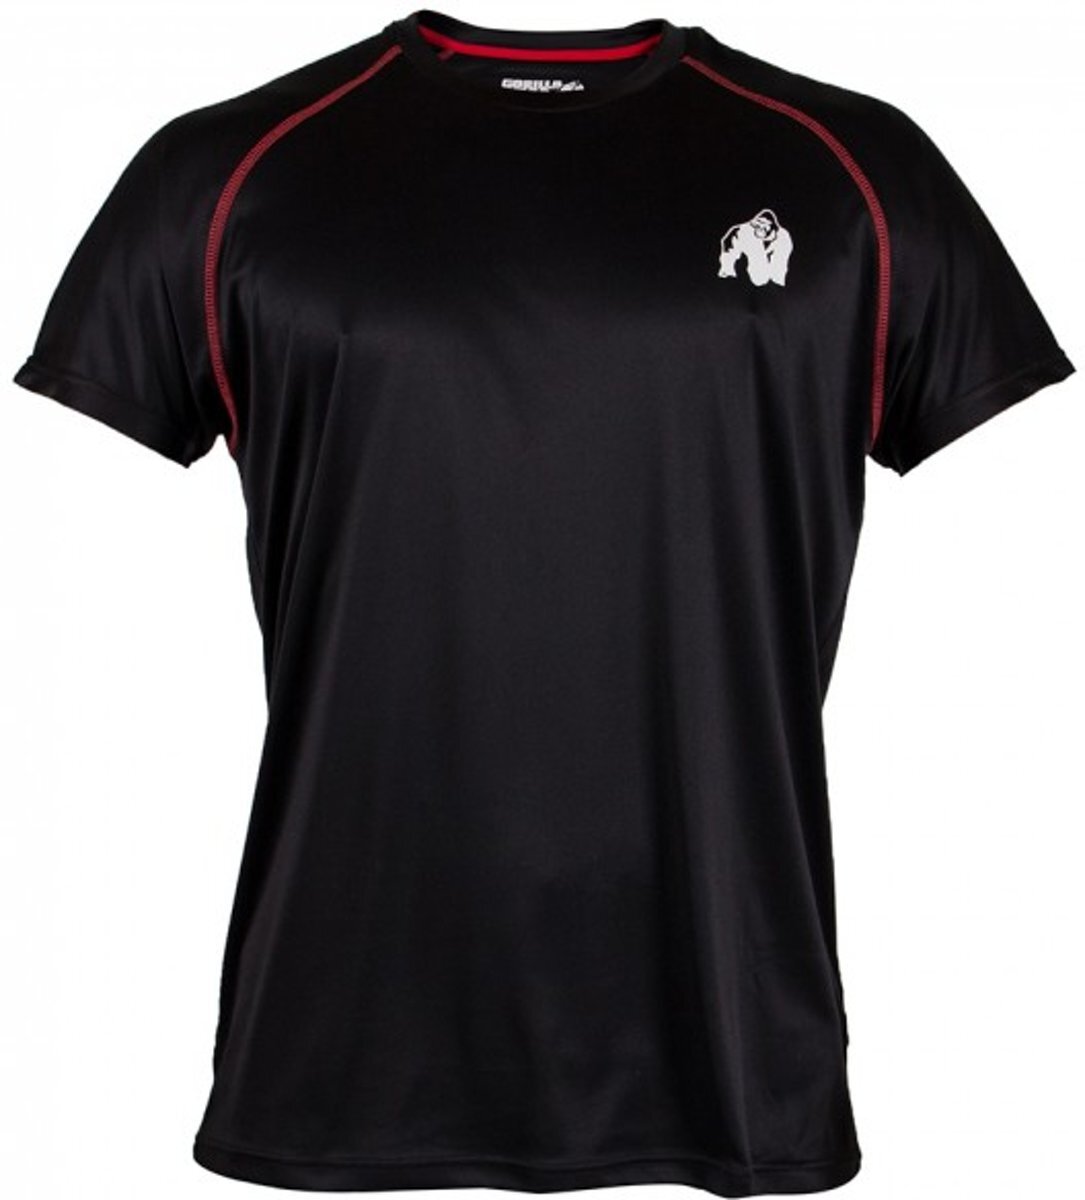 Gorilla Wear Performance t-shirt Black/red - XXXXL